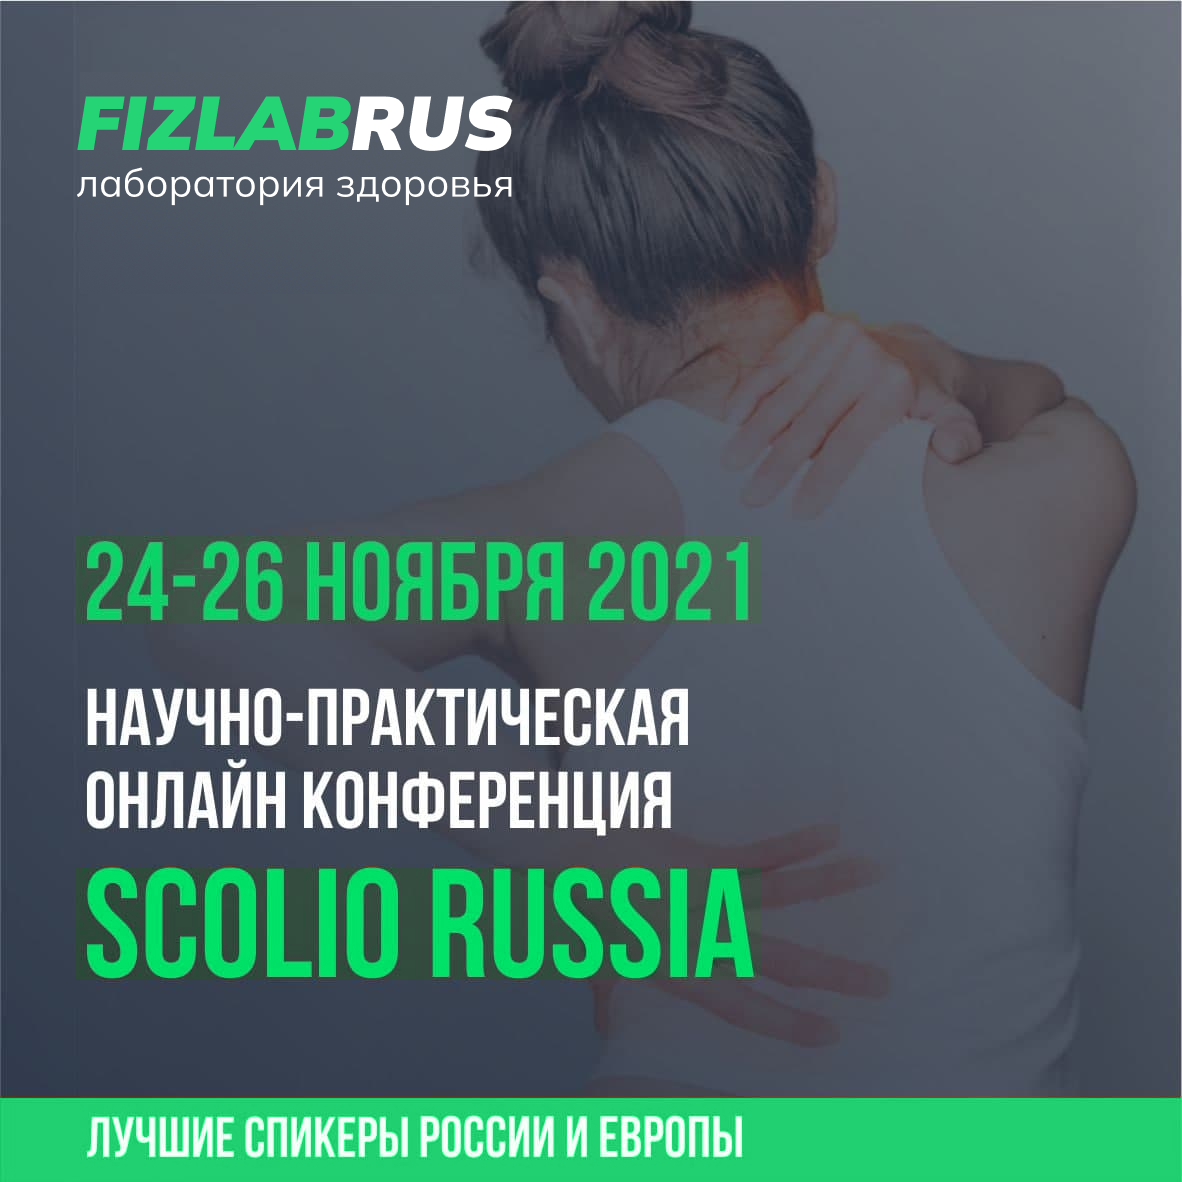 ScolioRussia — 2021